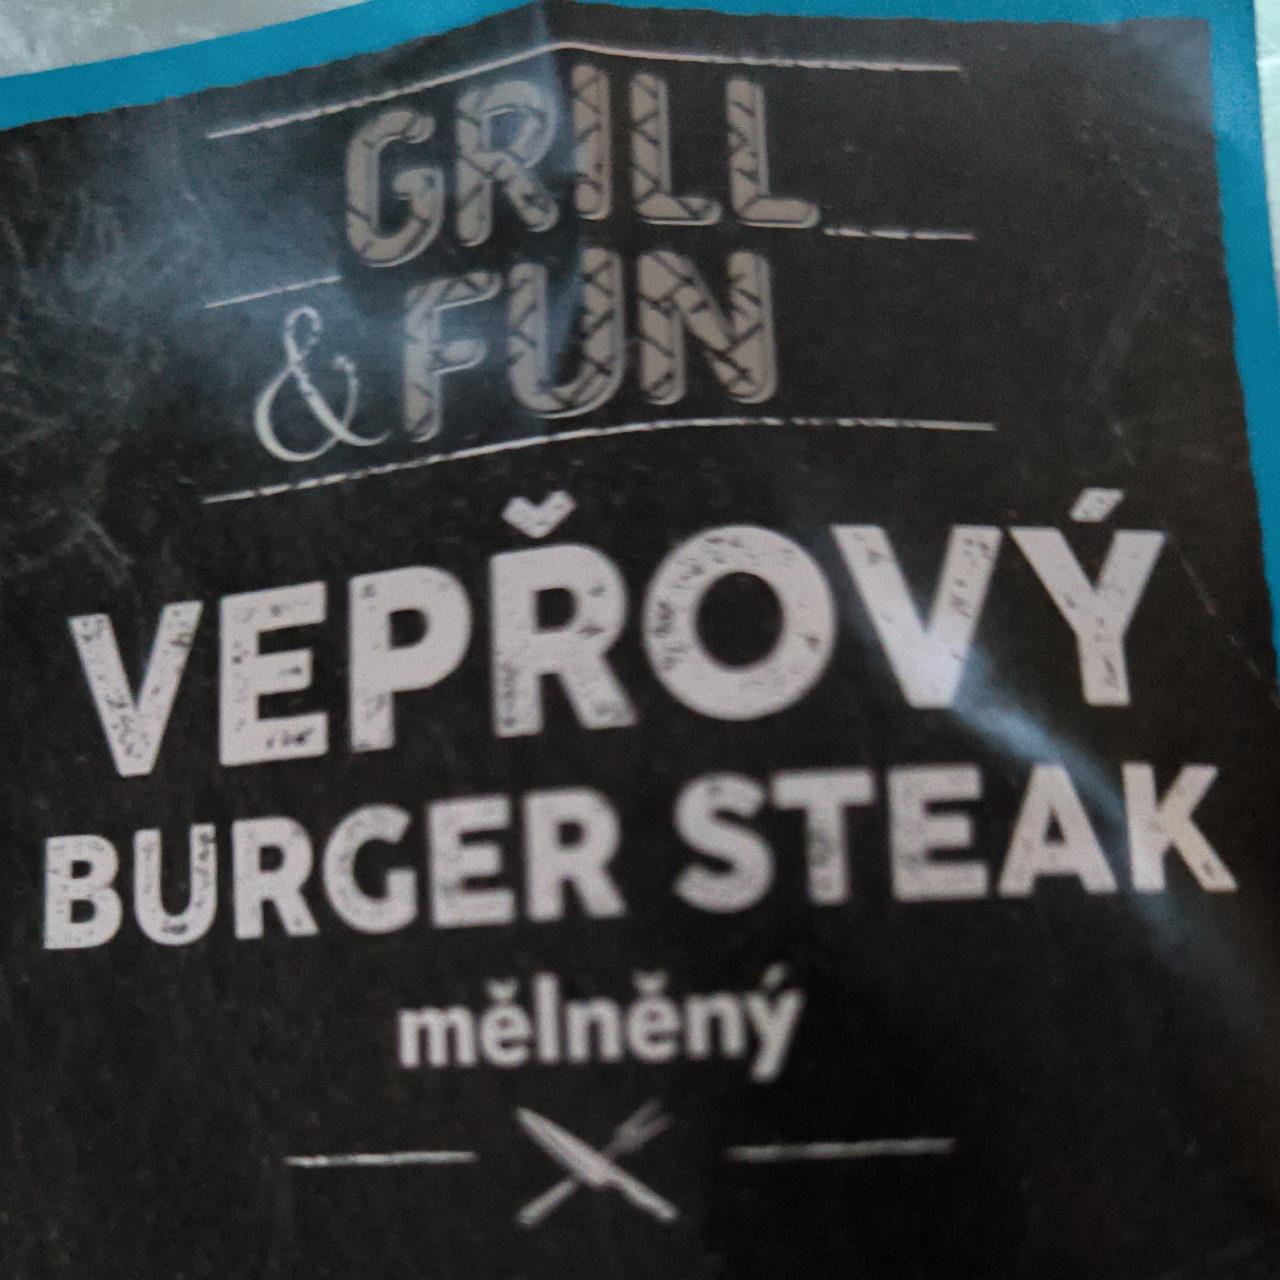 Fotografie - Vepřový burger steak mělněný Grill & Fun